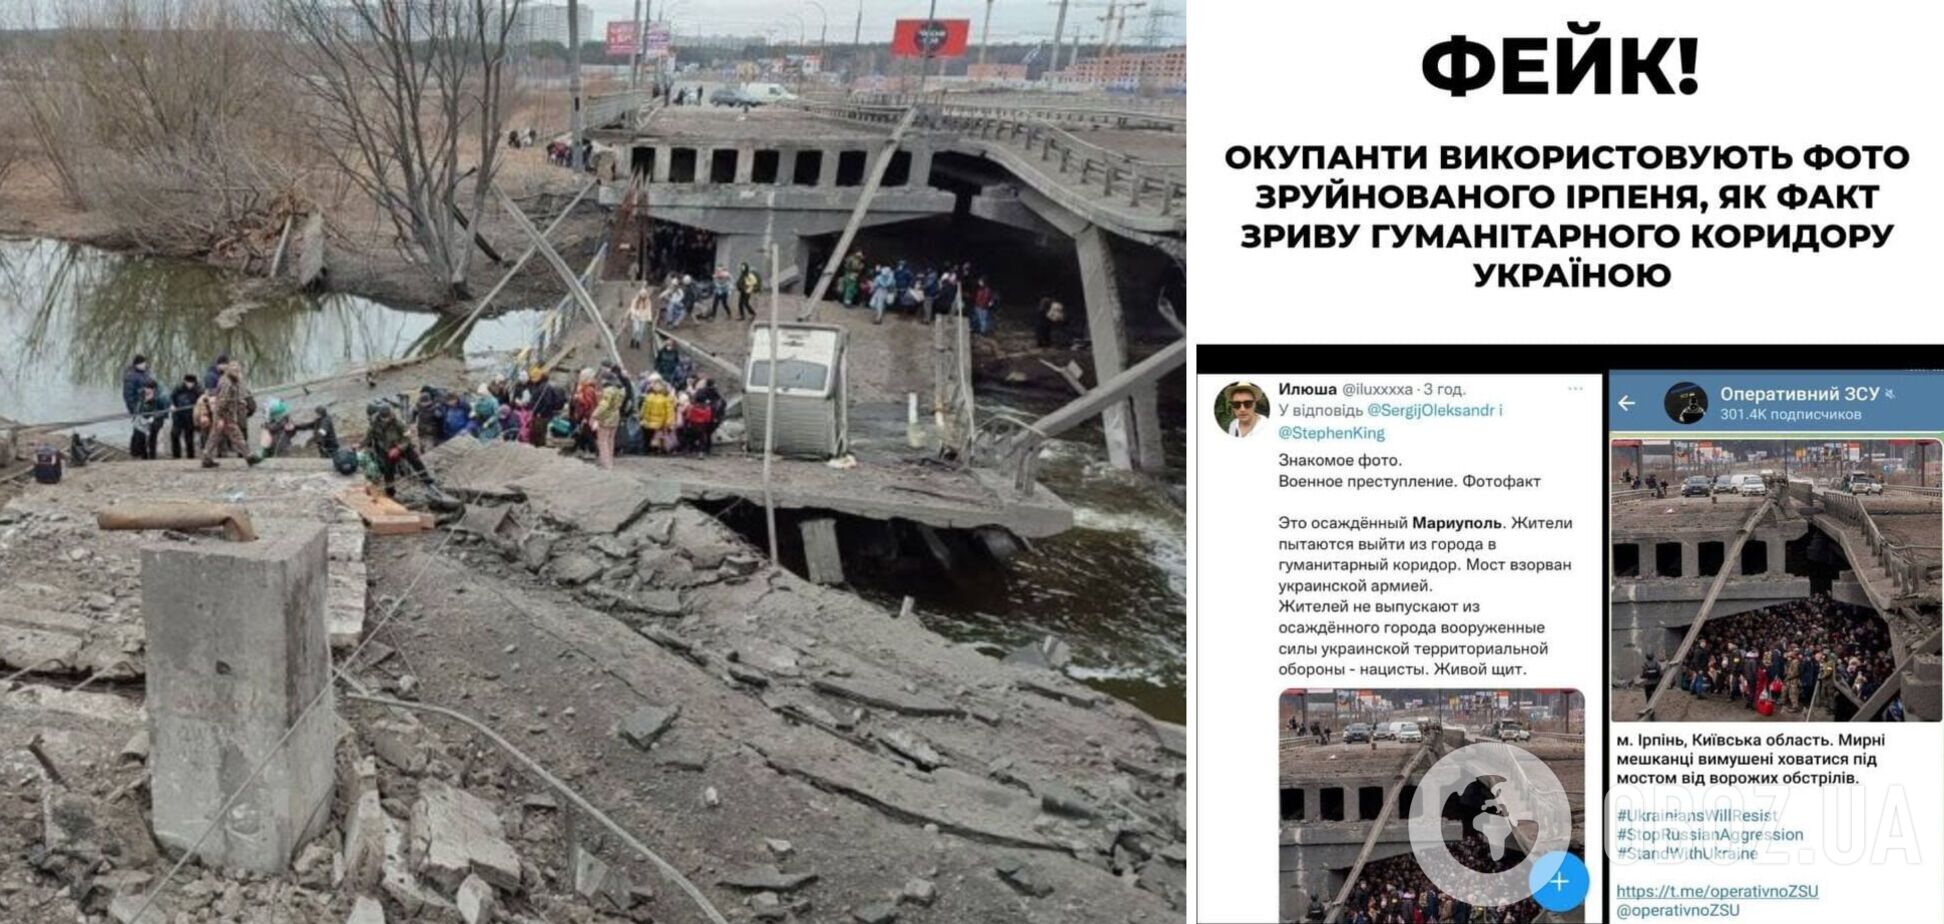 В РФ запустили очередной фейк: Украину обвинили в срыве эвакуации в Мариуполе, показав взорванный в Ирпене мост